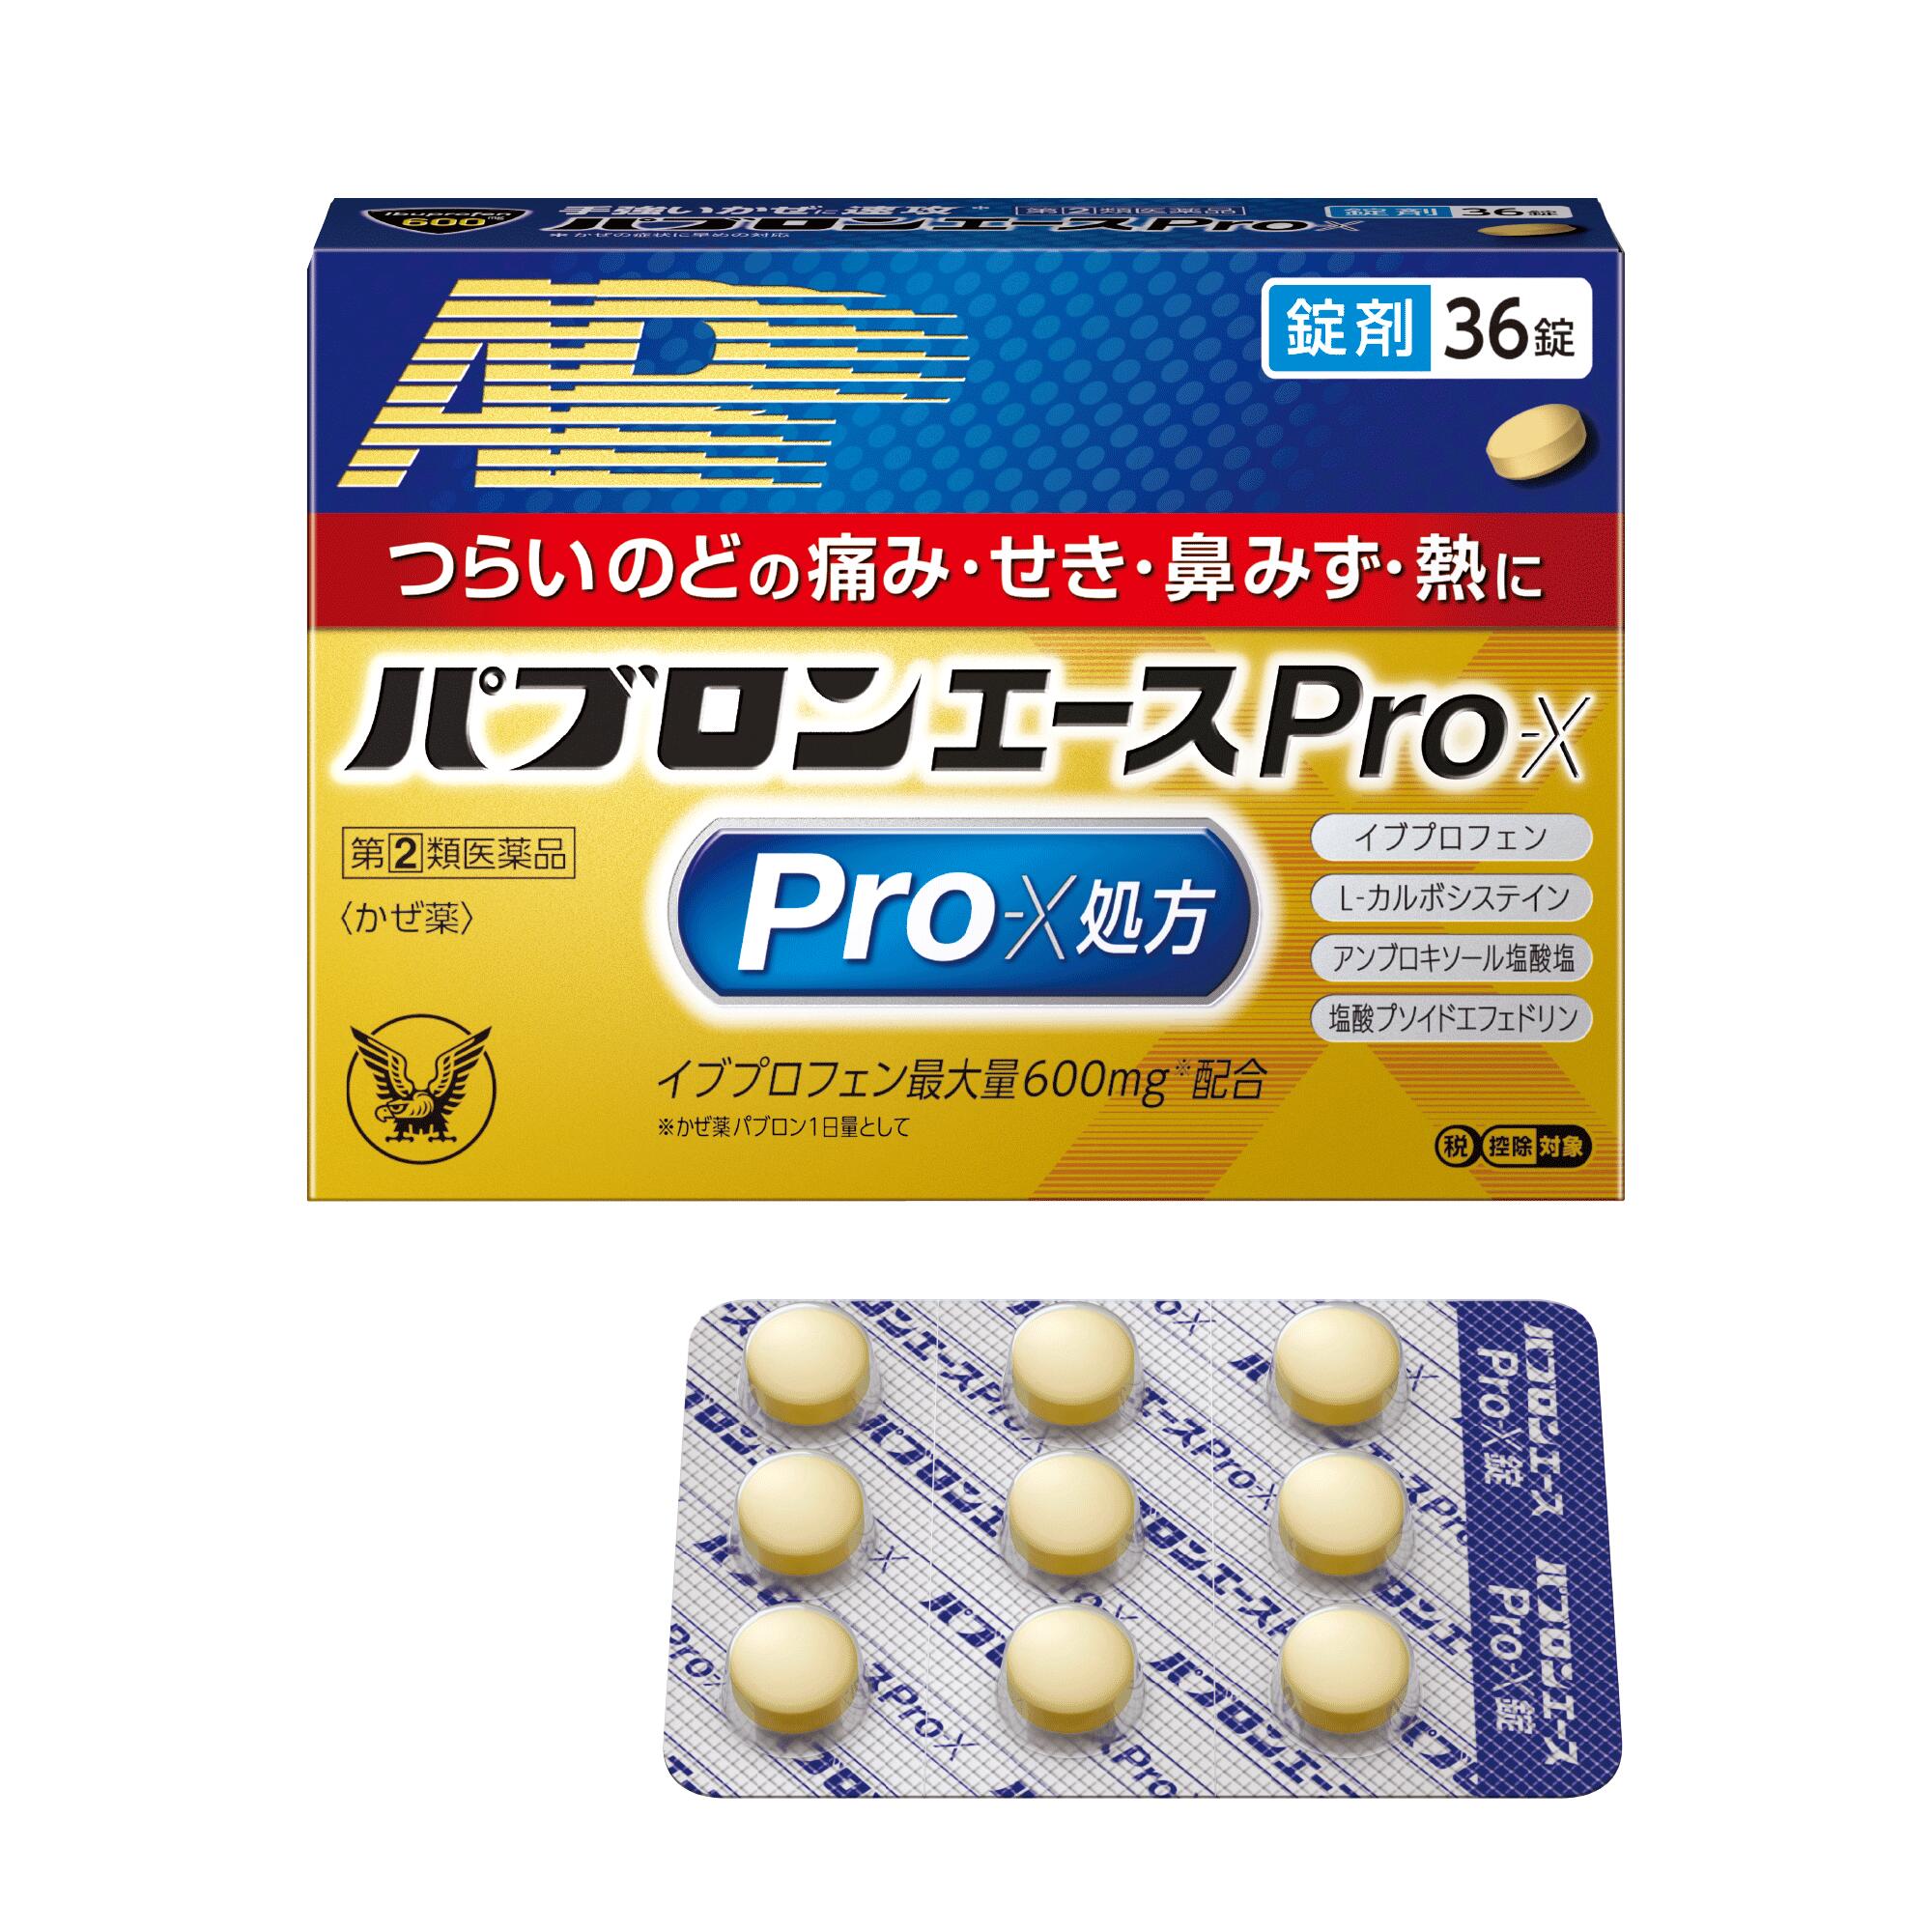 【第 2 類医薬品】 パブロンエースPro-X錠 36錠 大正製薬 メール便送料無料